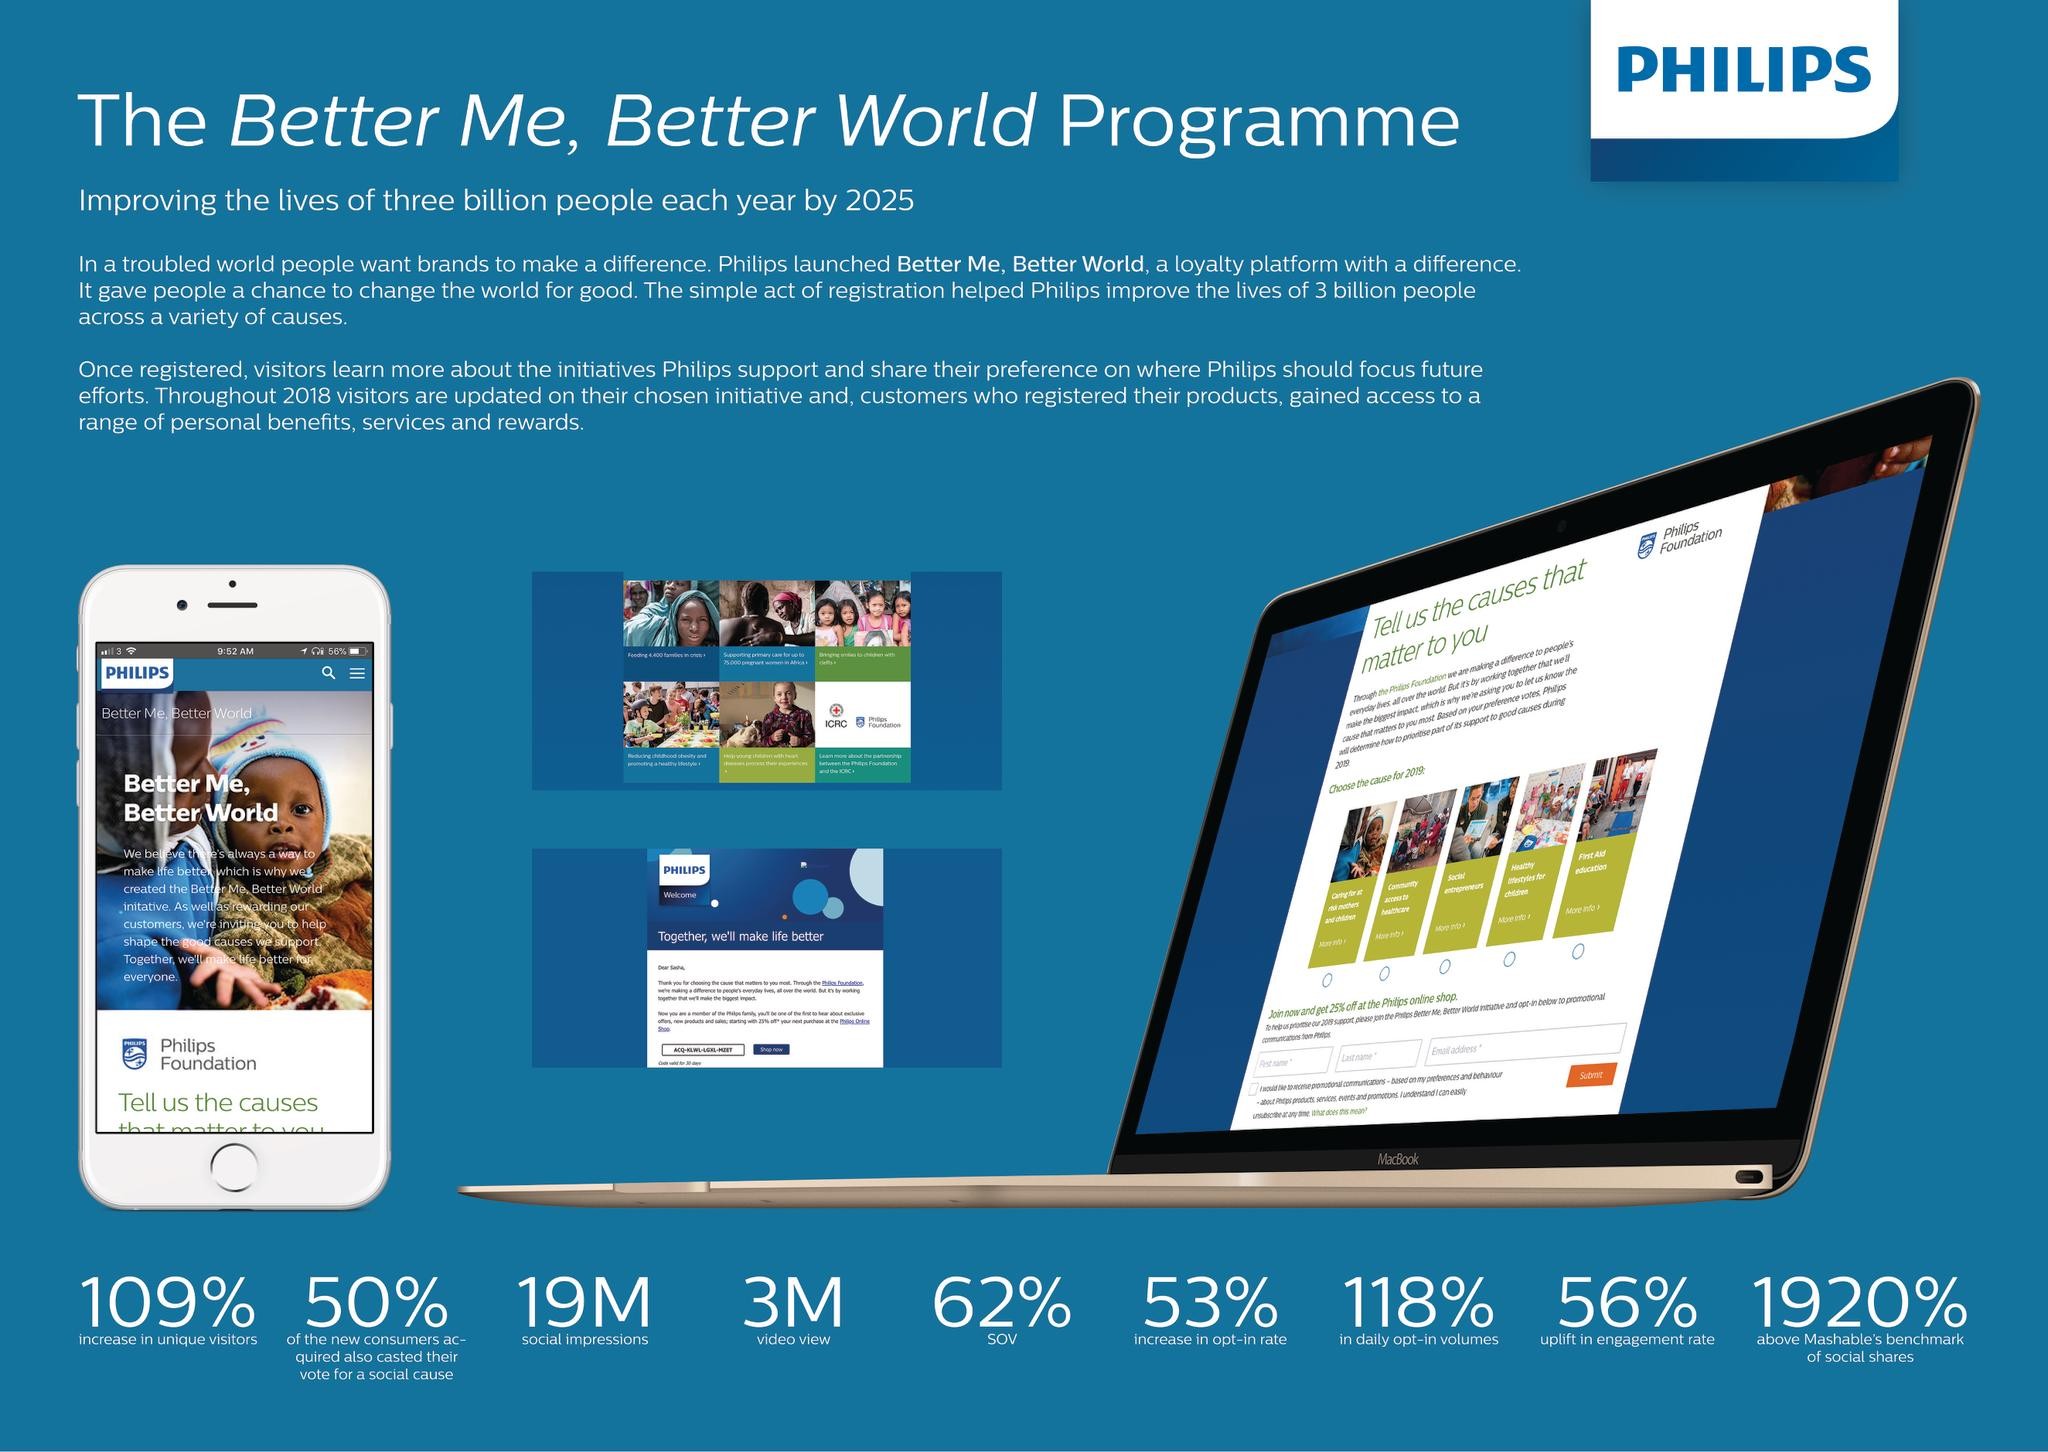 Philips Better Me, Better World Programme